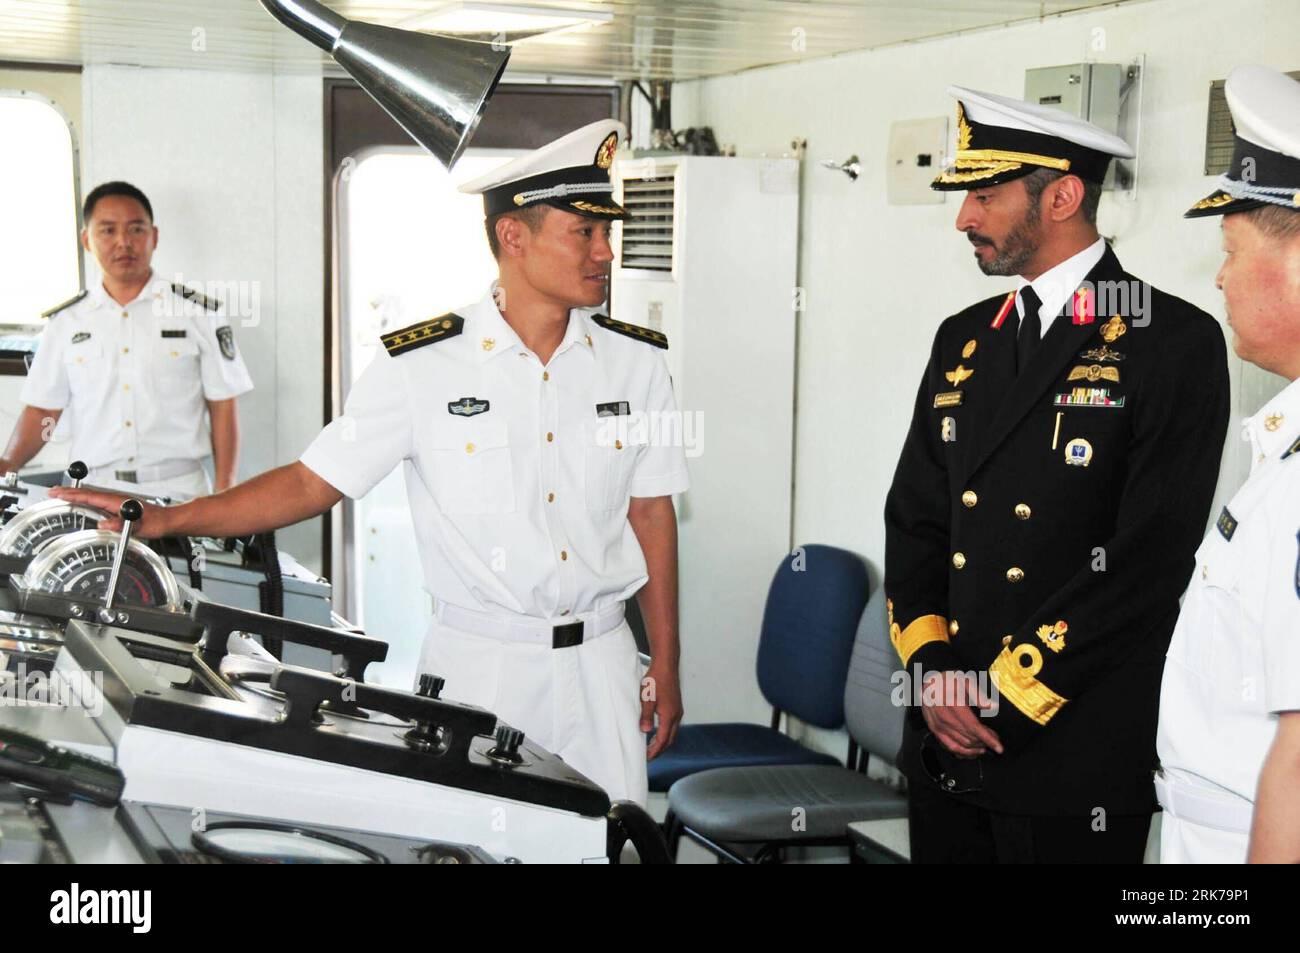 Bildnummer : 53890695 Datum : 24.03.2010 Copyright : imago/Xinhua (100325) -- ABU DHABI, 25 mars 2010 (Xinhua) -- Wang Yongping (2e L), commandant de la frégate Maanshan de la marine chinoise, fait une introduction au contre-amiral Sheikh Saeed bin Hamdan Al Nahyan (2e R) de la marine des Émirats arabes Unis, le 24 mars 2010 à Abu Dhabi, capitale des Émirats arabes Unis. À l'issue de la mission d'escorte dans le golfe d'Aden visant à protéger les navires commerciaux dans les eaux somaliennes harcelées par les pirates, la frégate Maanshan et le navire d'approvisionnement complet Qiandaohu, qui font partie du quatrième groupe opérationnel d'escorte de la marine chinoise, sont arrivés au point i. Banque D'Images